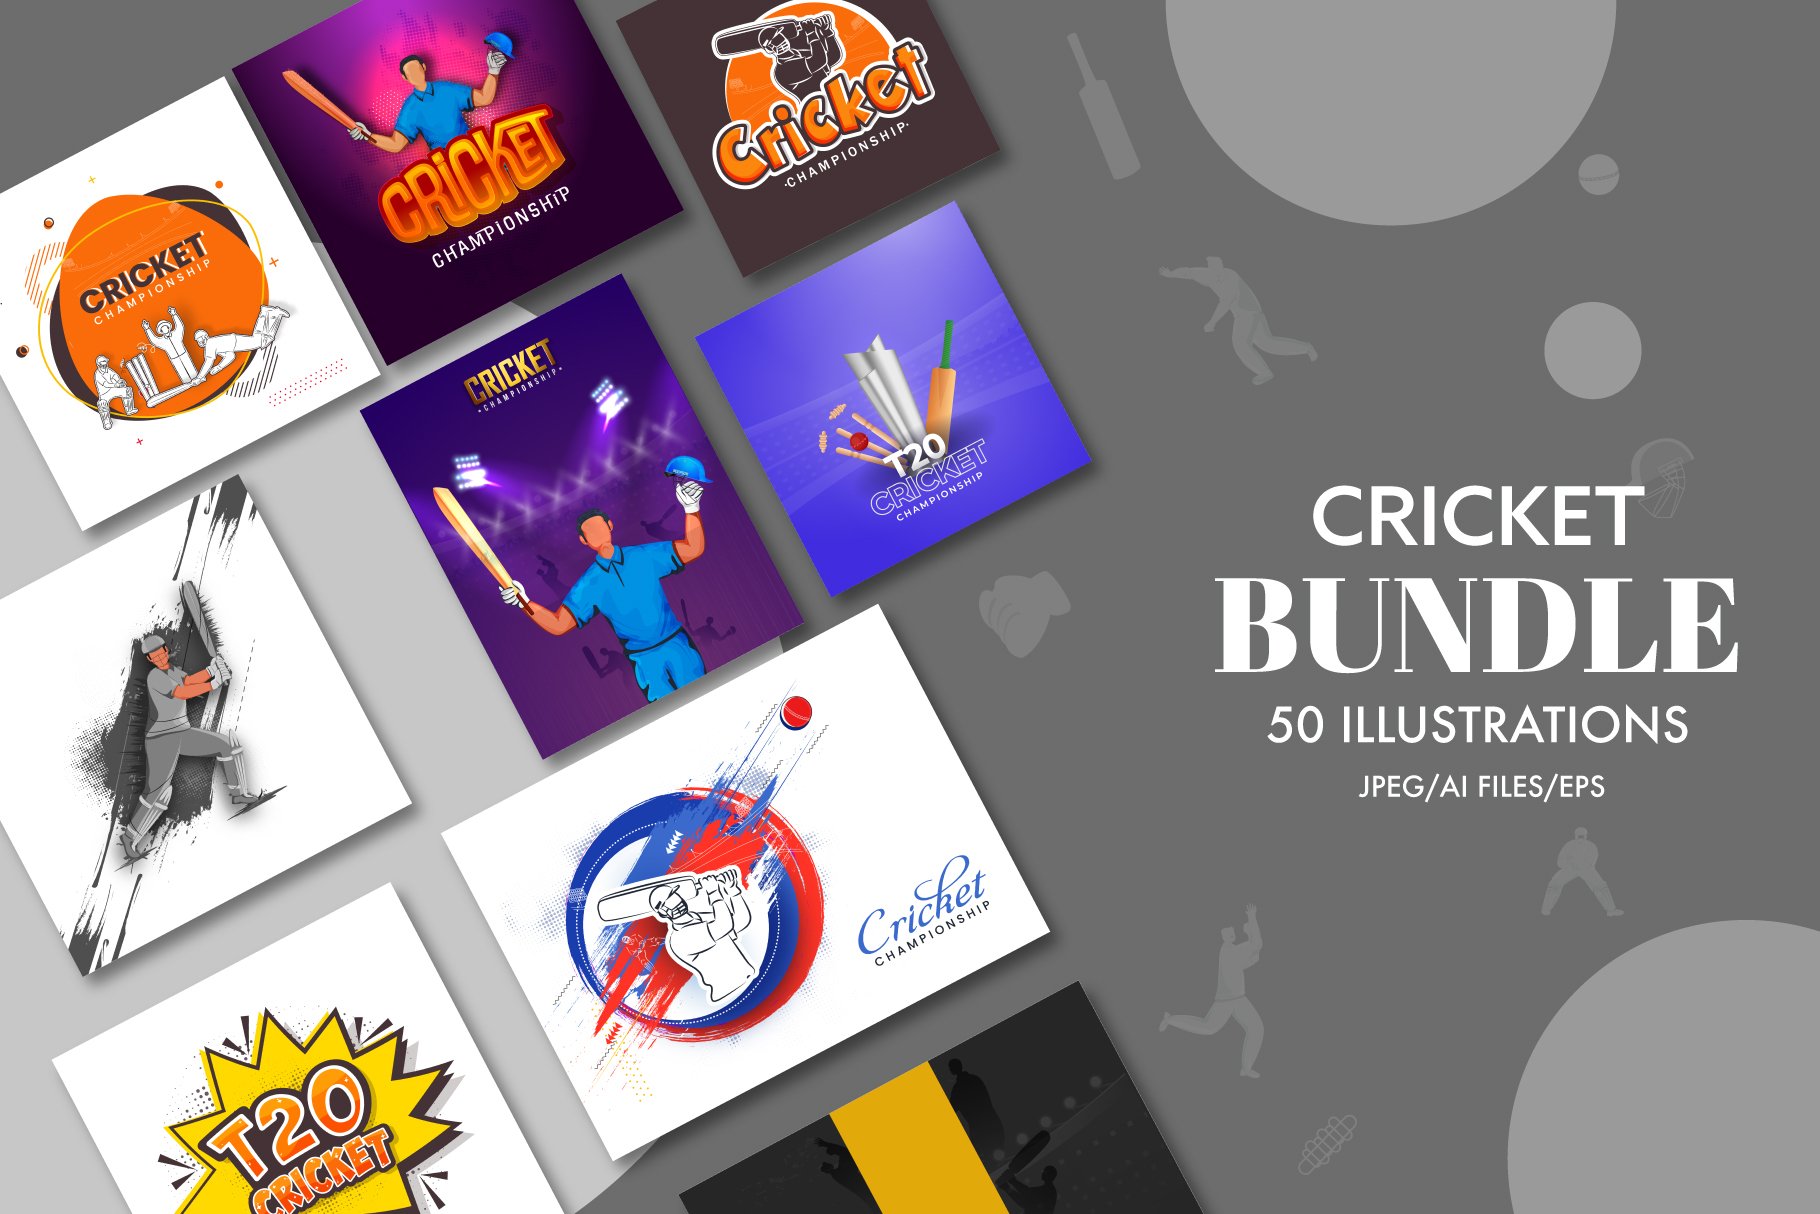 Cricket 2021 Bundle Vol. 2 cover image.